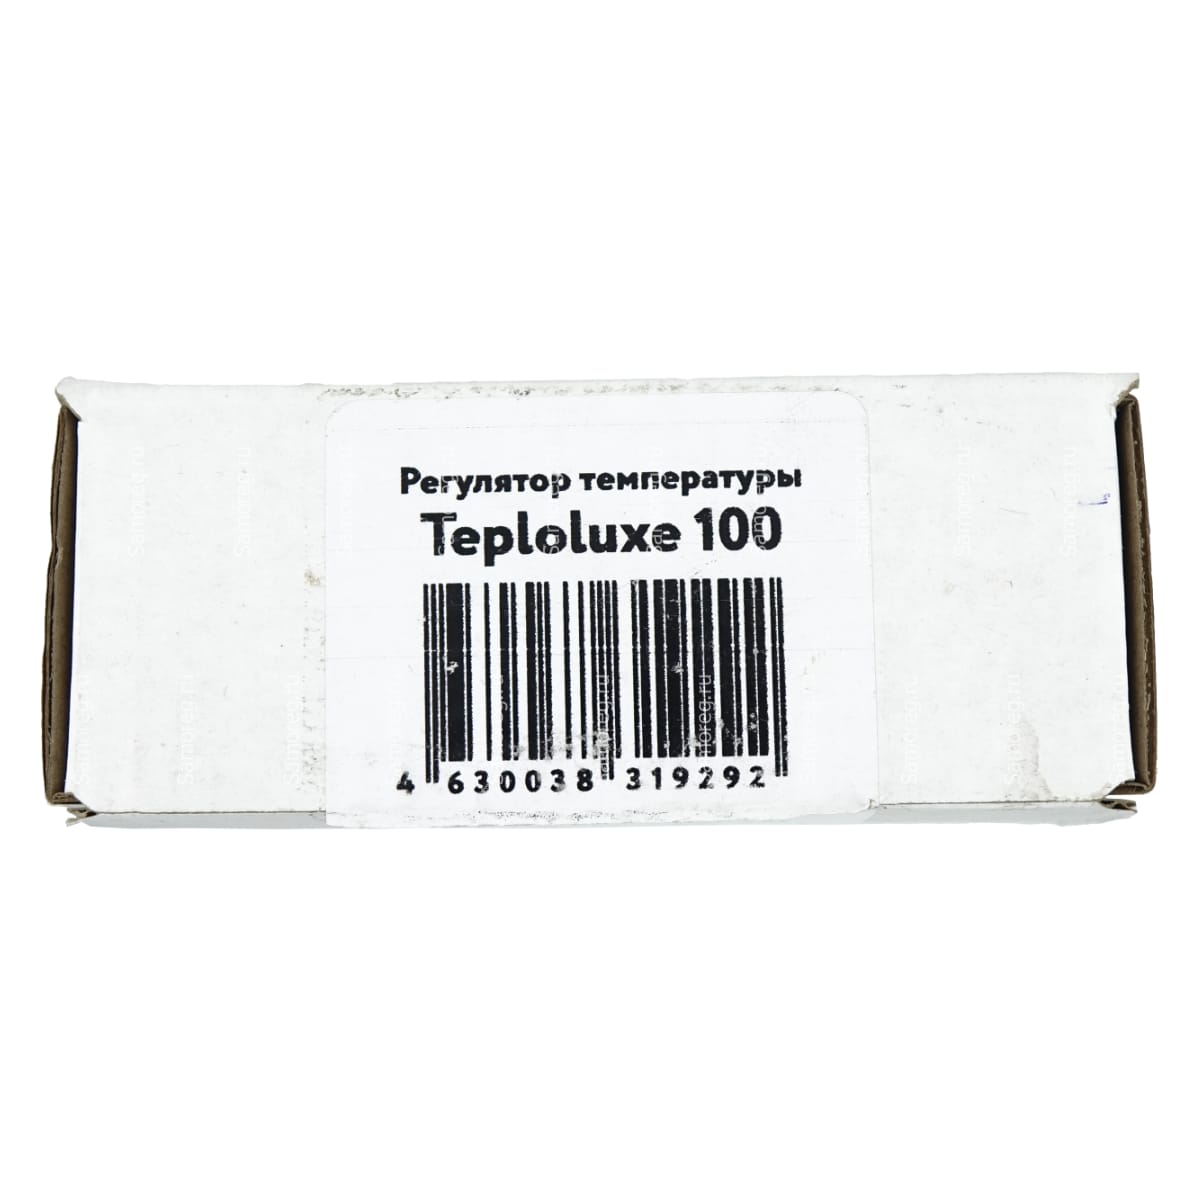 Регулятор температуры Teploluxe 100